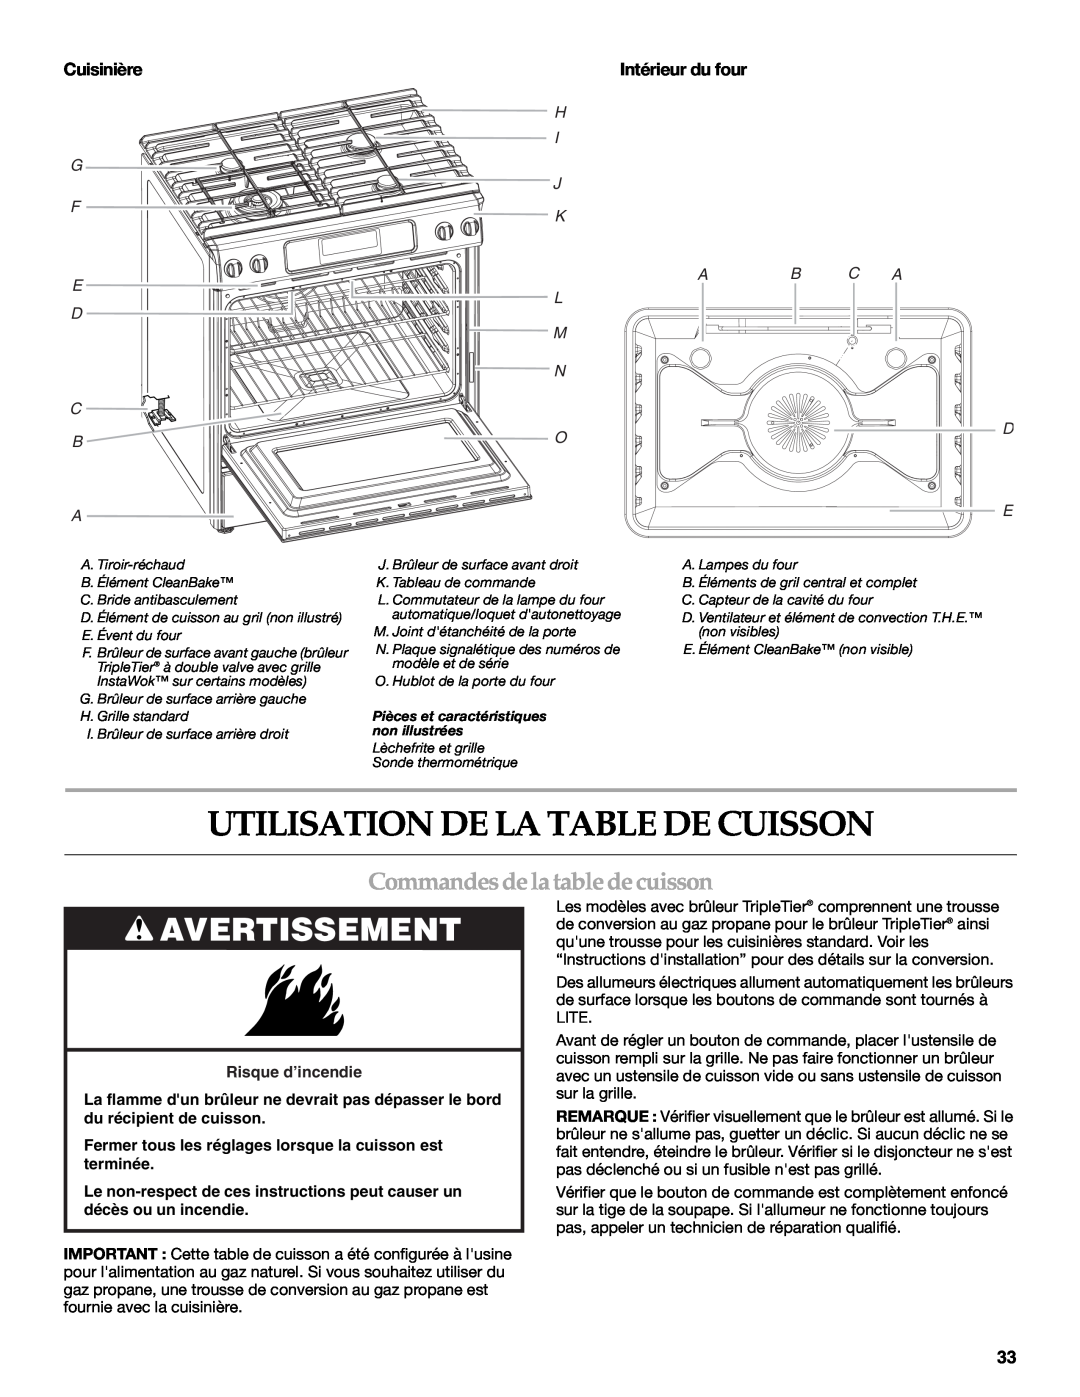 KitchenAid KDRS807 manual Utilisation De La Table De Cuisson, Commandesde la table de cuisson, Avertissement, Cuisinière 